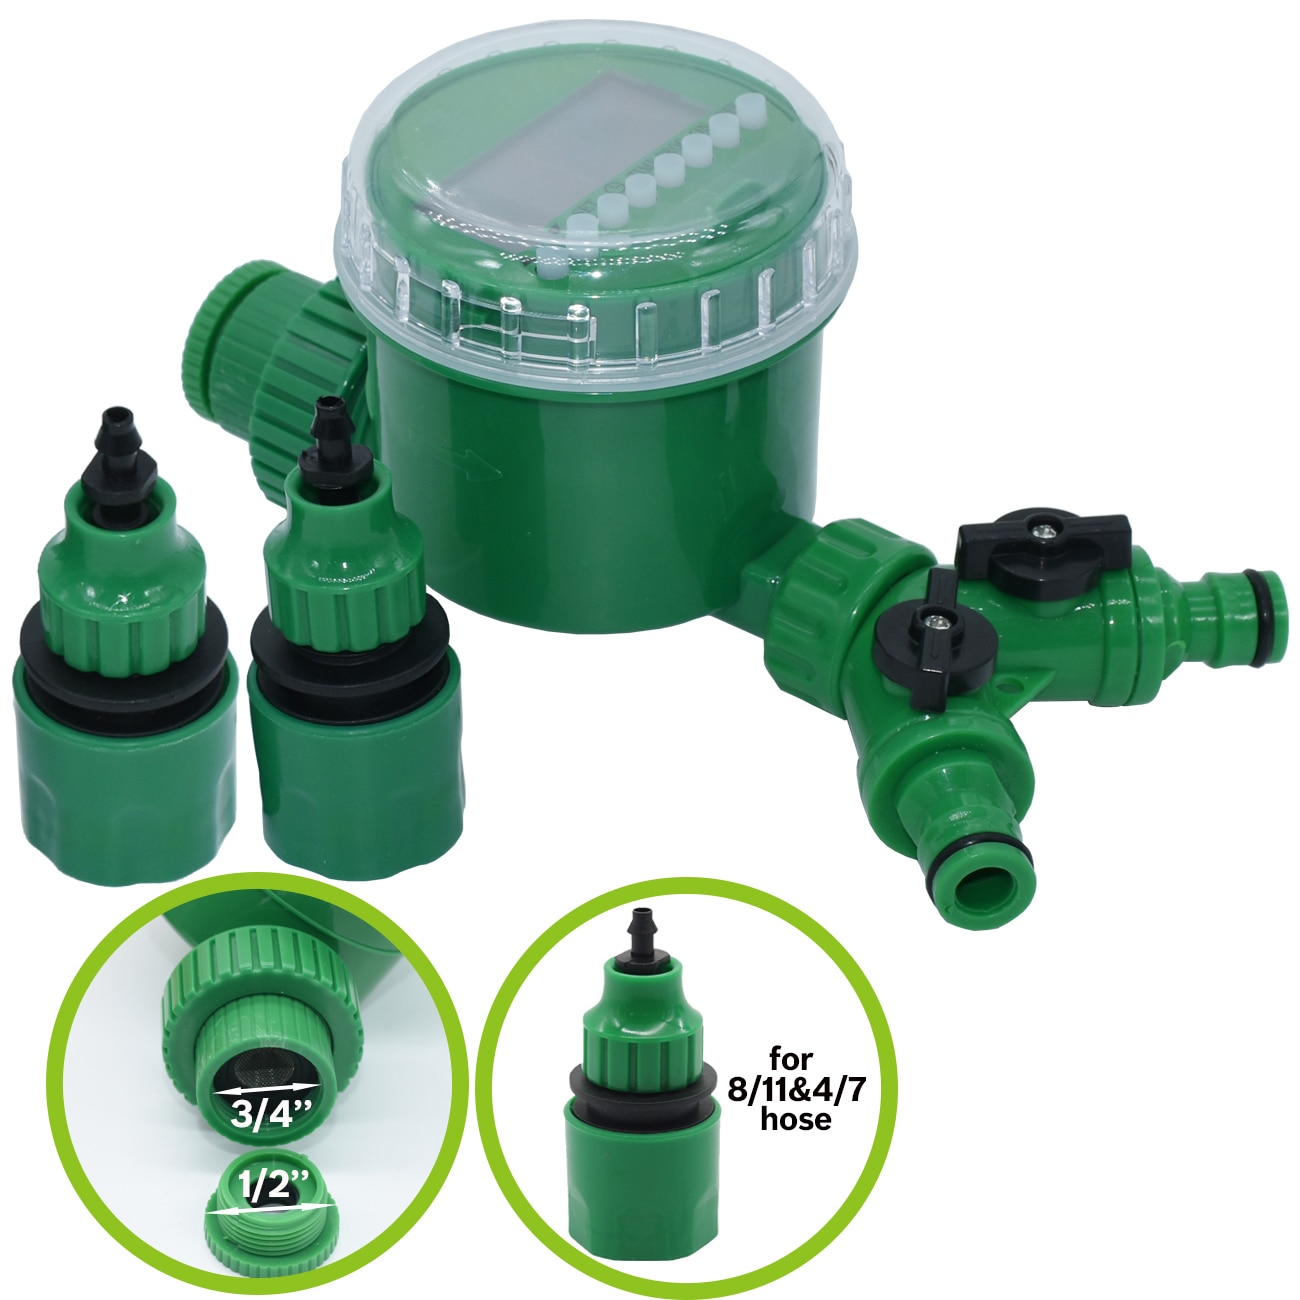 Kesla timer kontrol 4/7mm haven vanding kit aucet hurtigstik justerbar spray  on 20cm spike tåge dyse vandingssystem